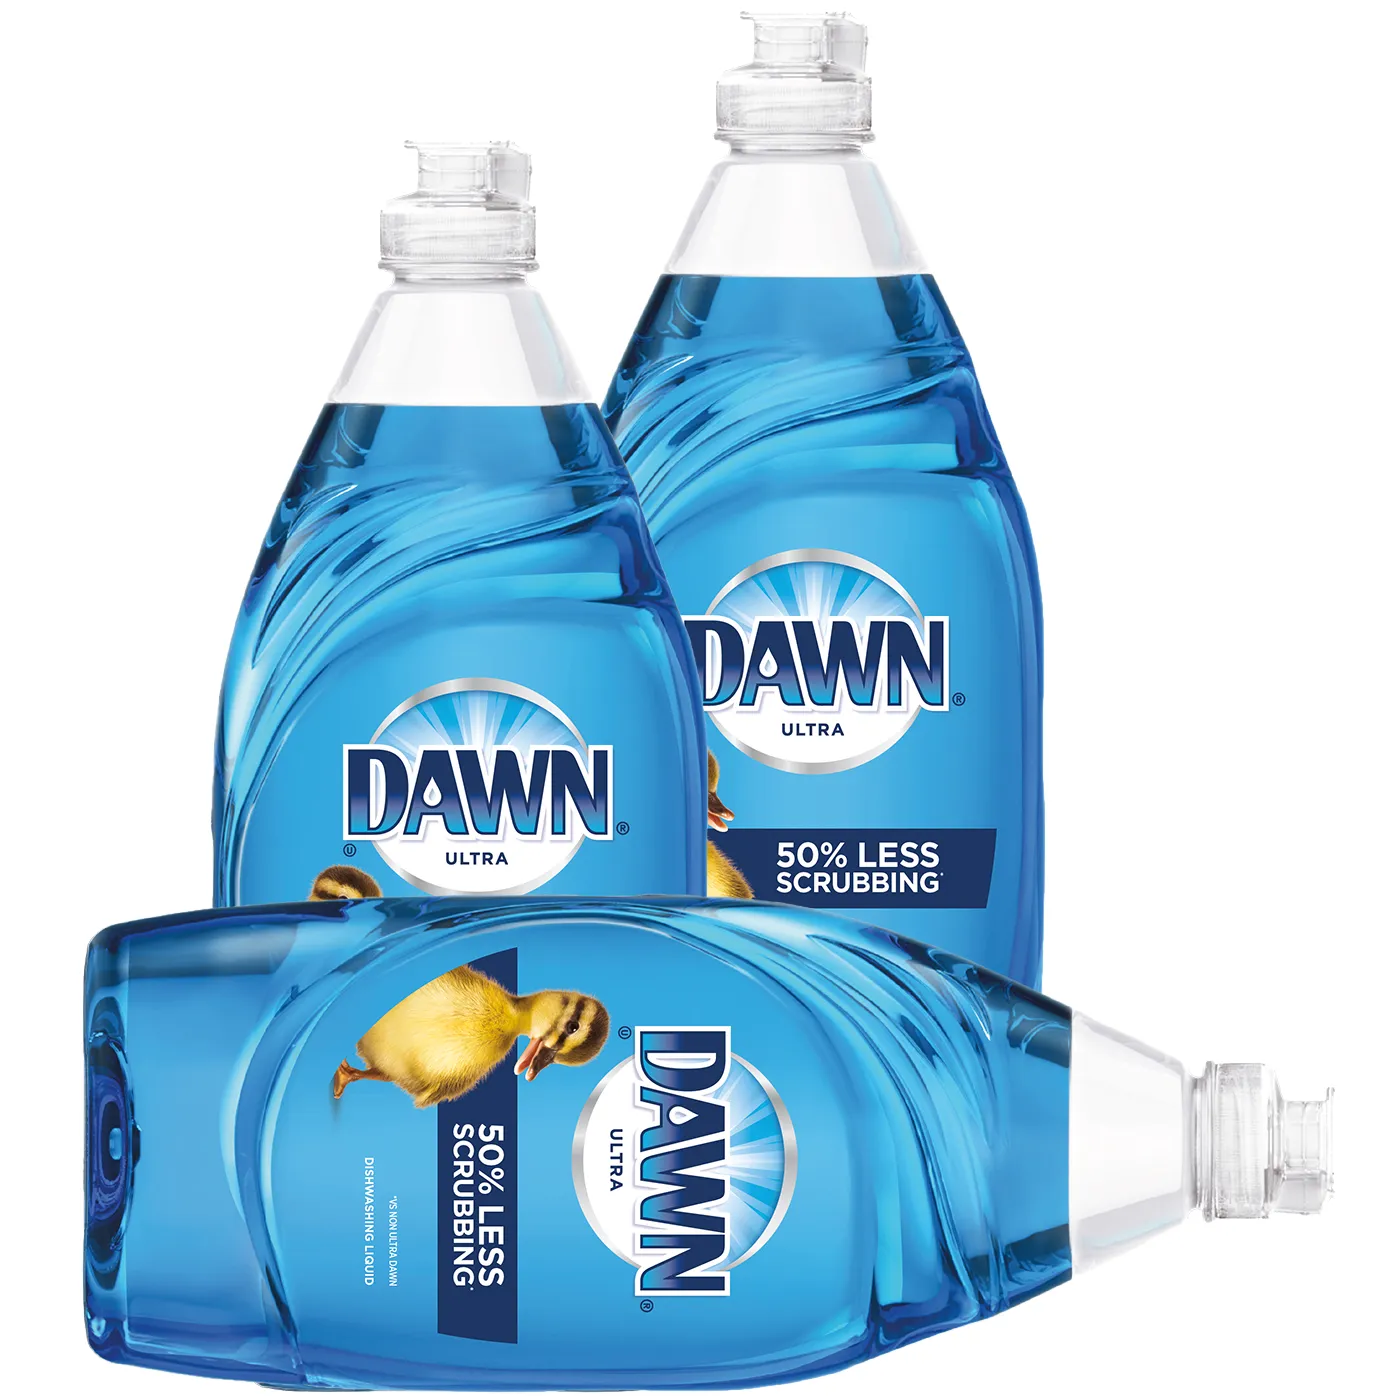 Free 4-Pack Of Dawn Ultra Liquid Dish Soap & Sponge Set